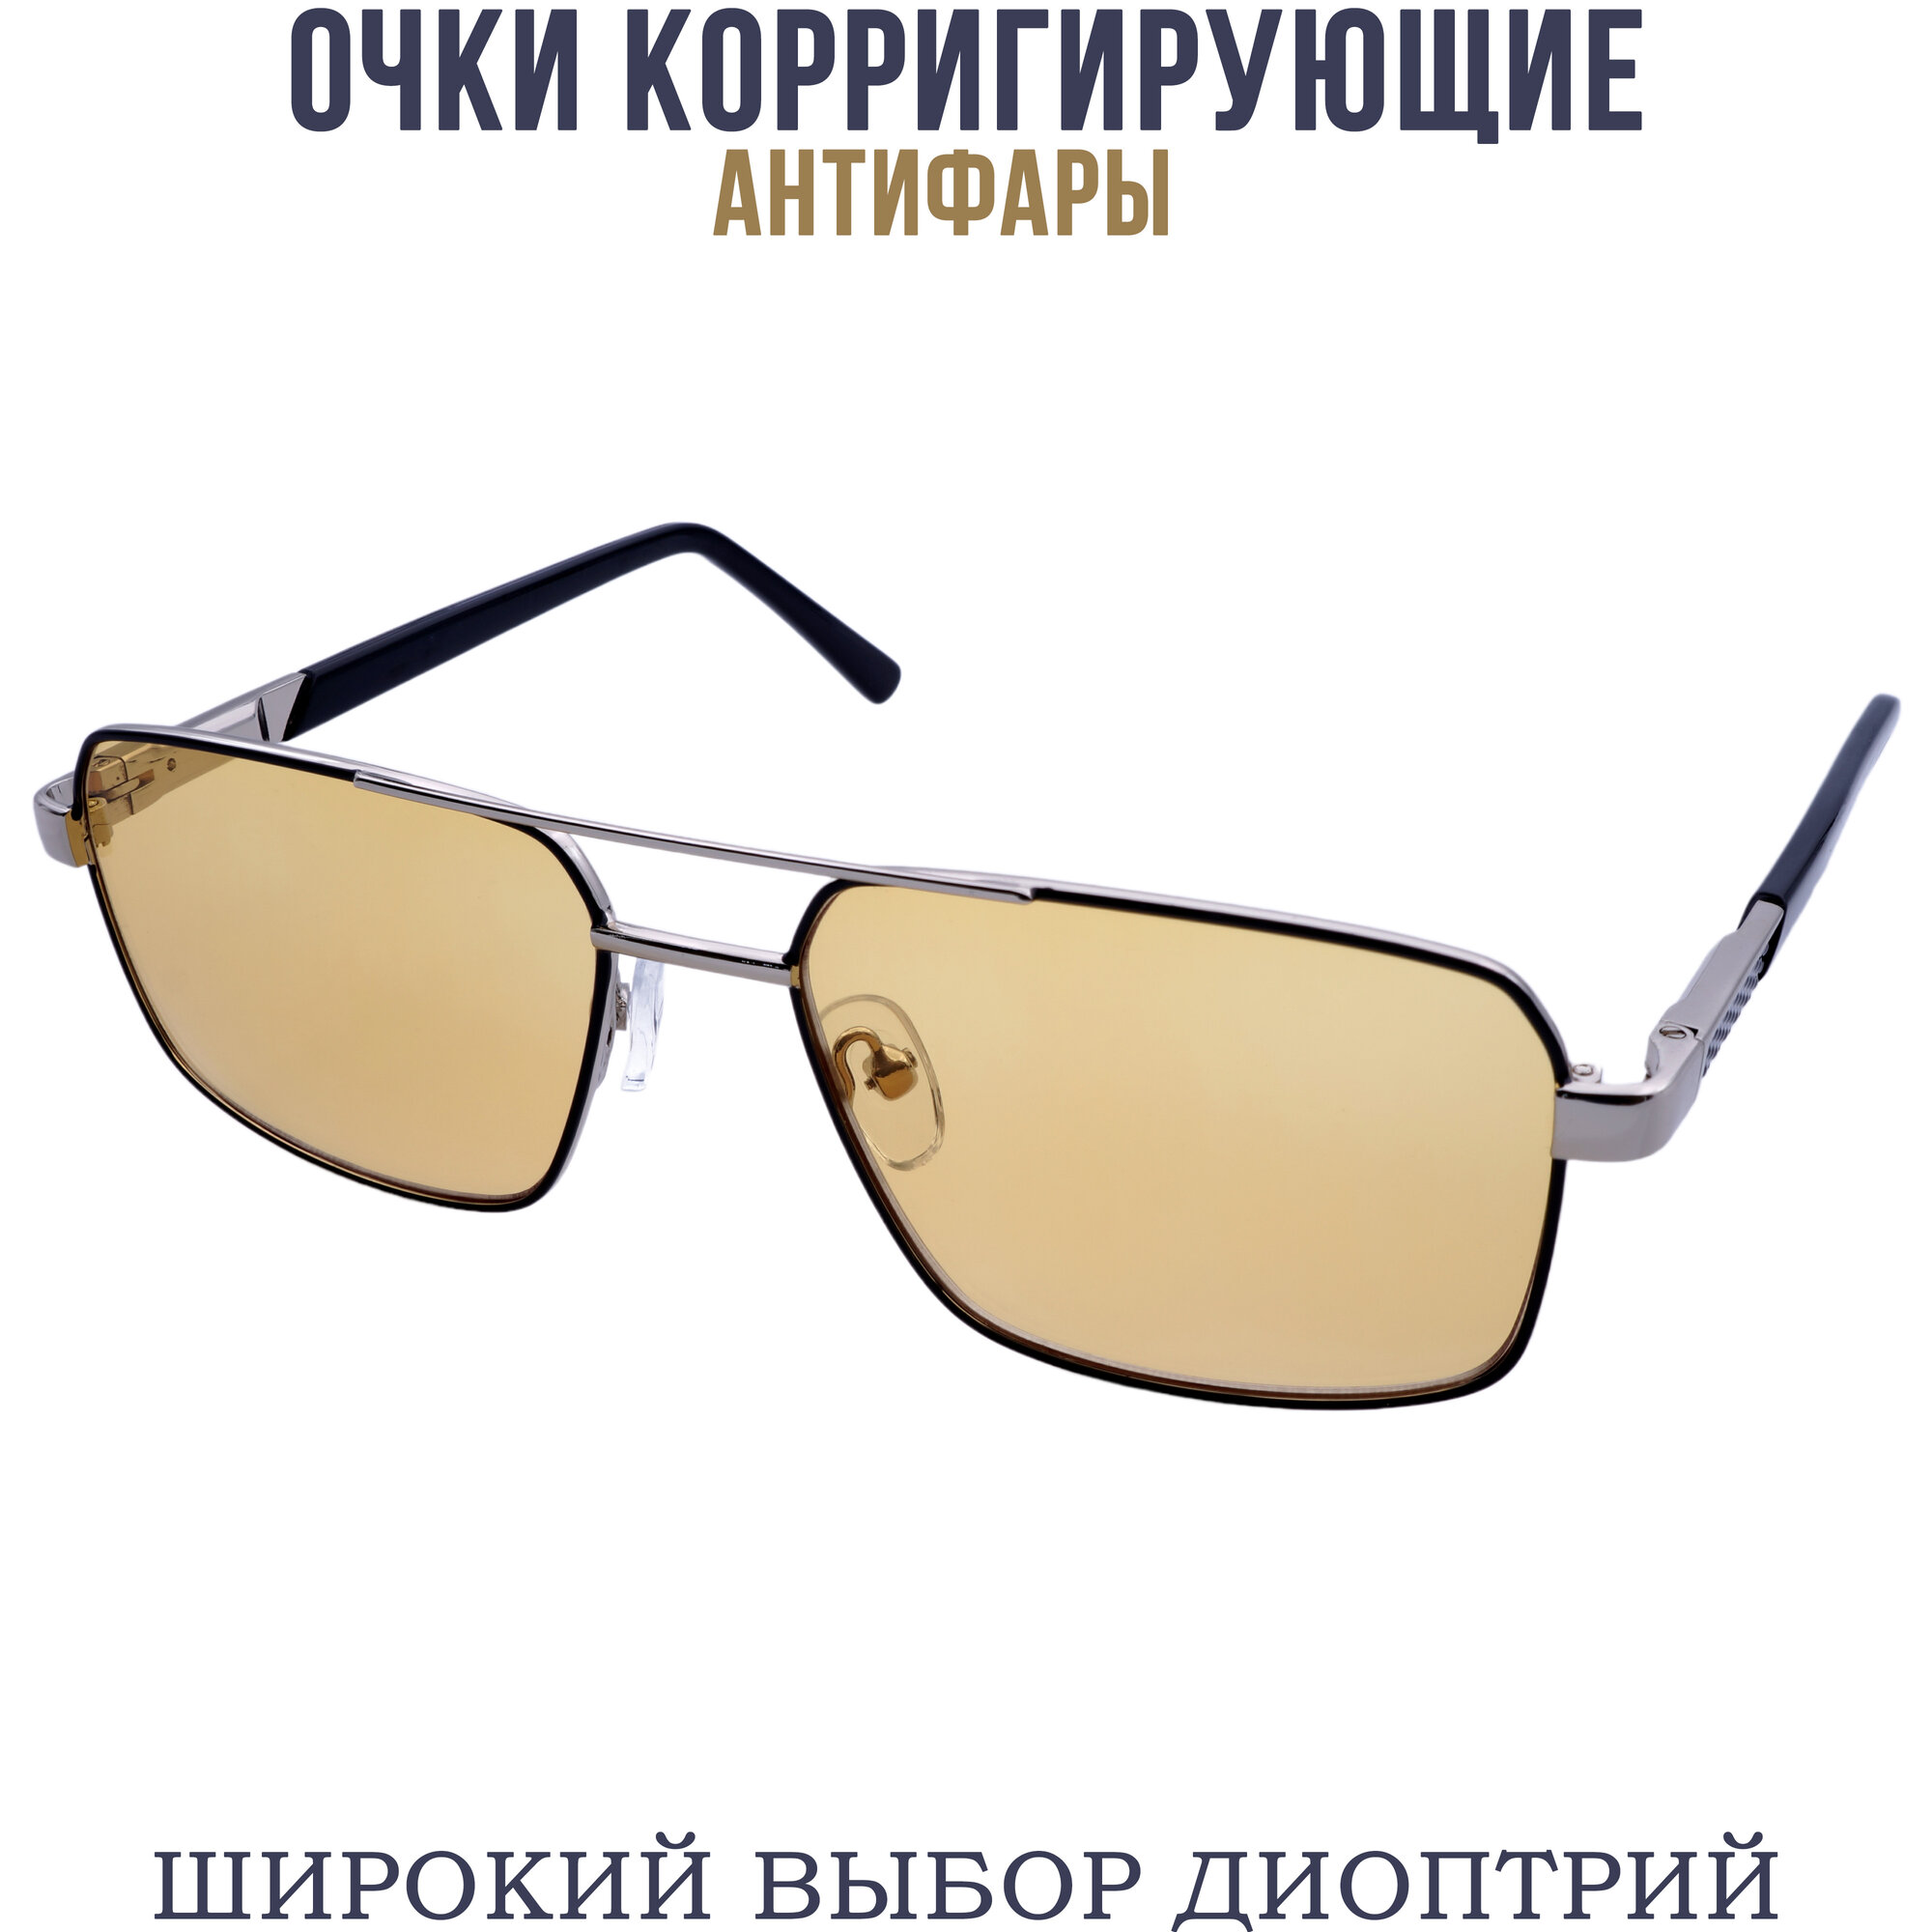 Готовые очки для зрения антифара с диоптриями pd62-64 бронзово-черный +2.25